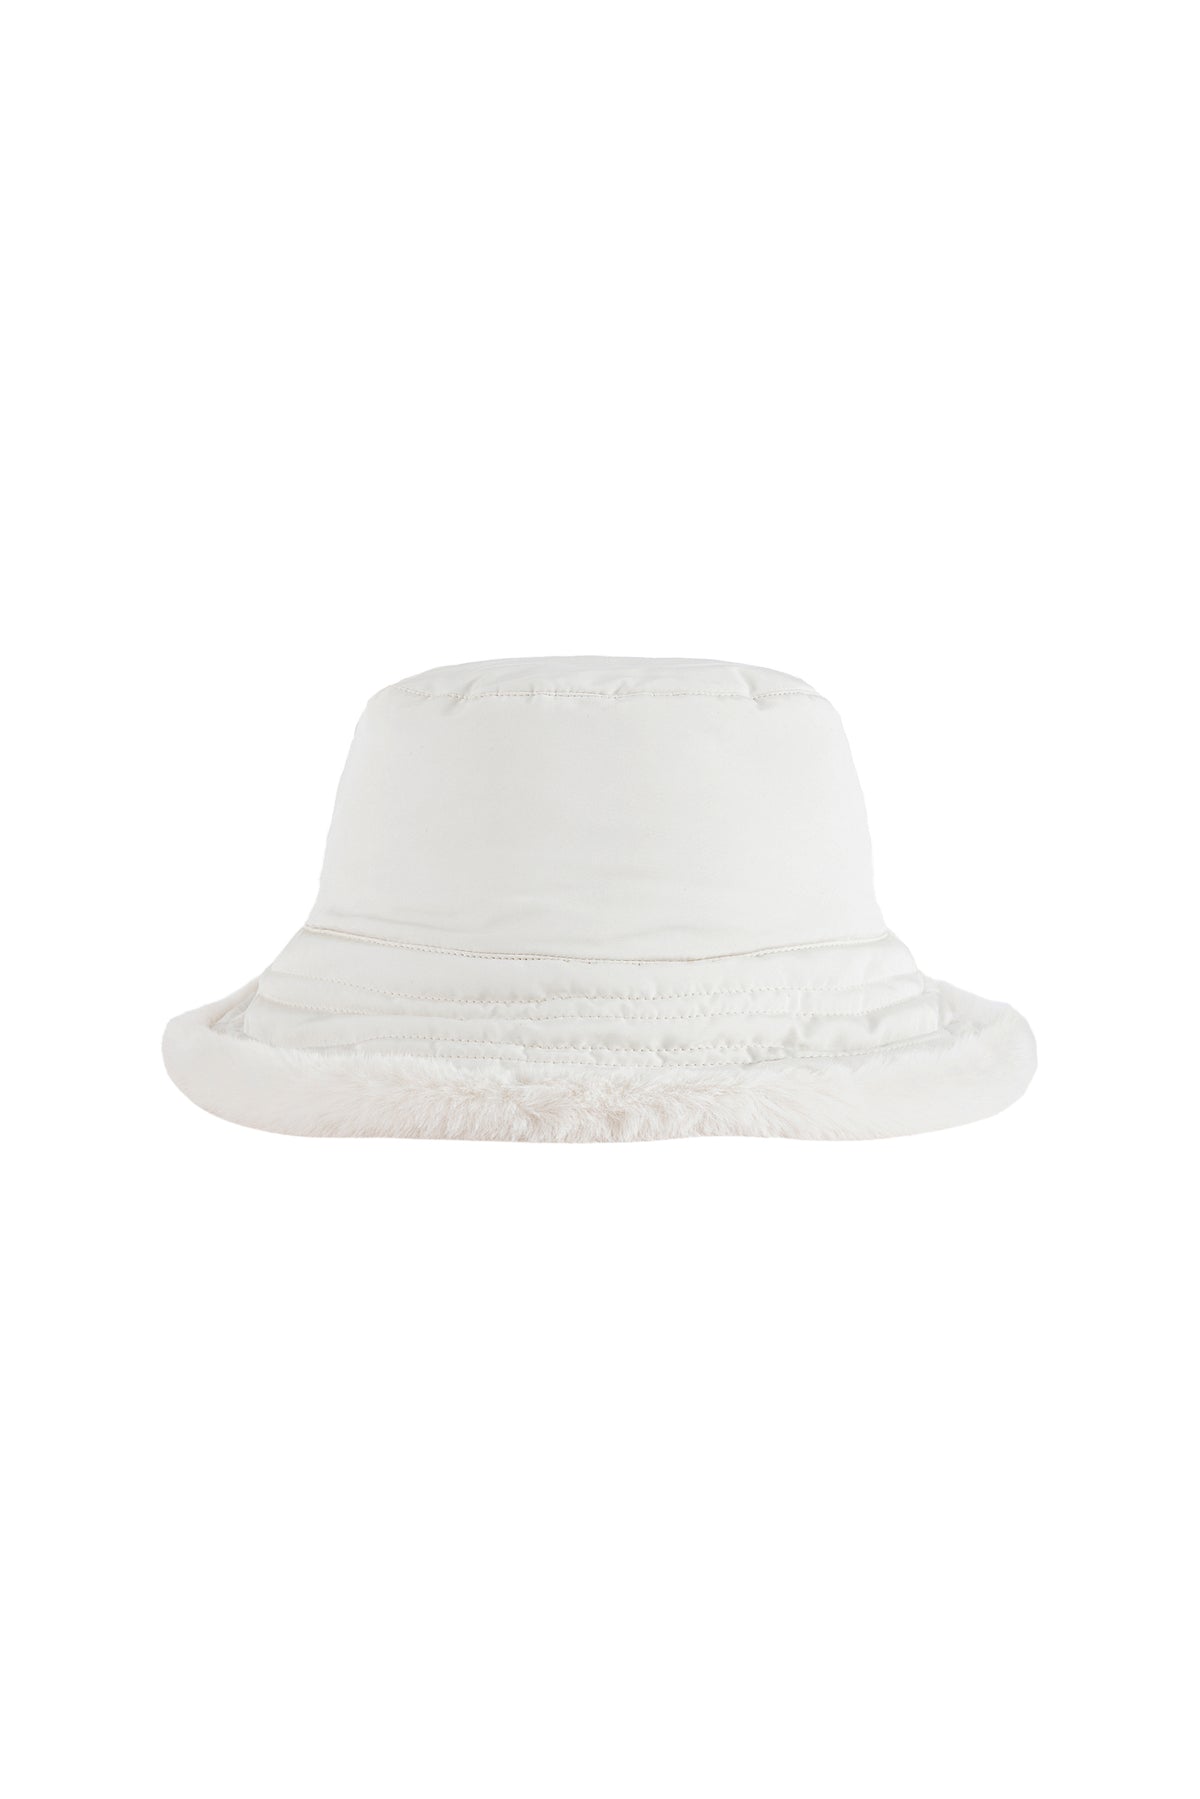 Vegancode - Reversible Bucket Hat in Cream